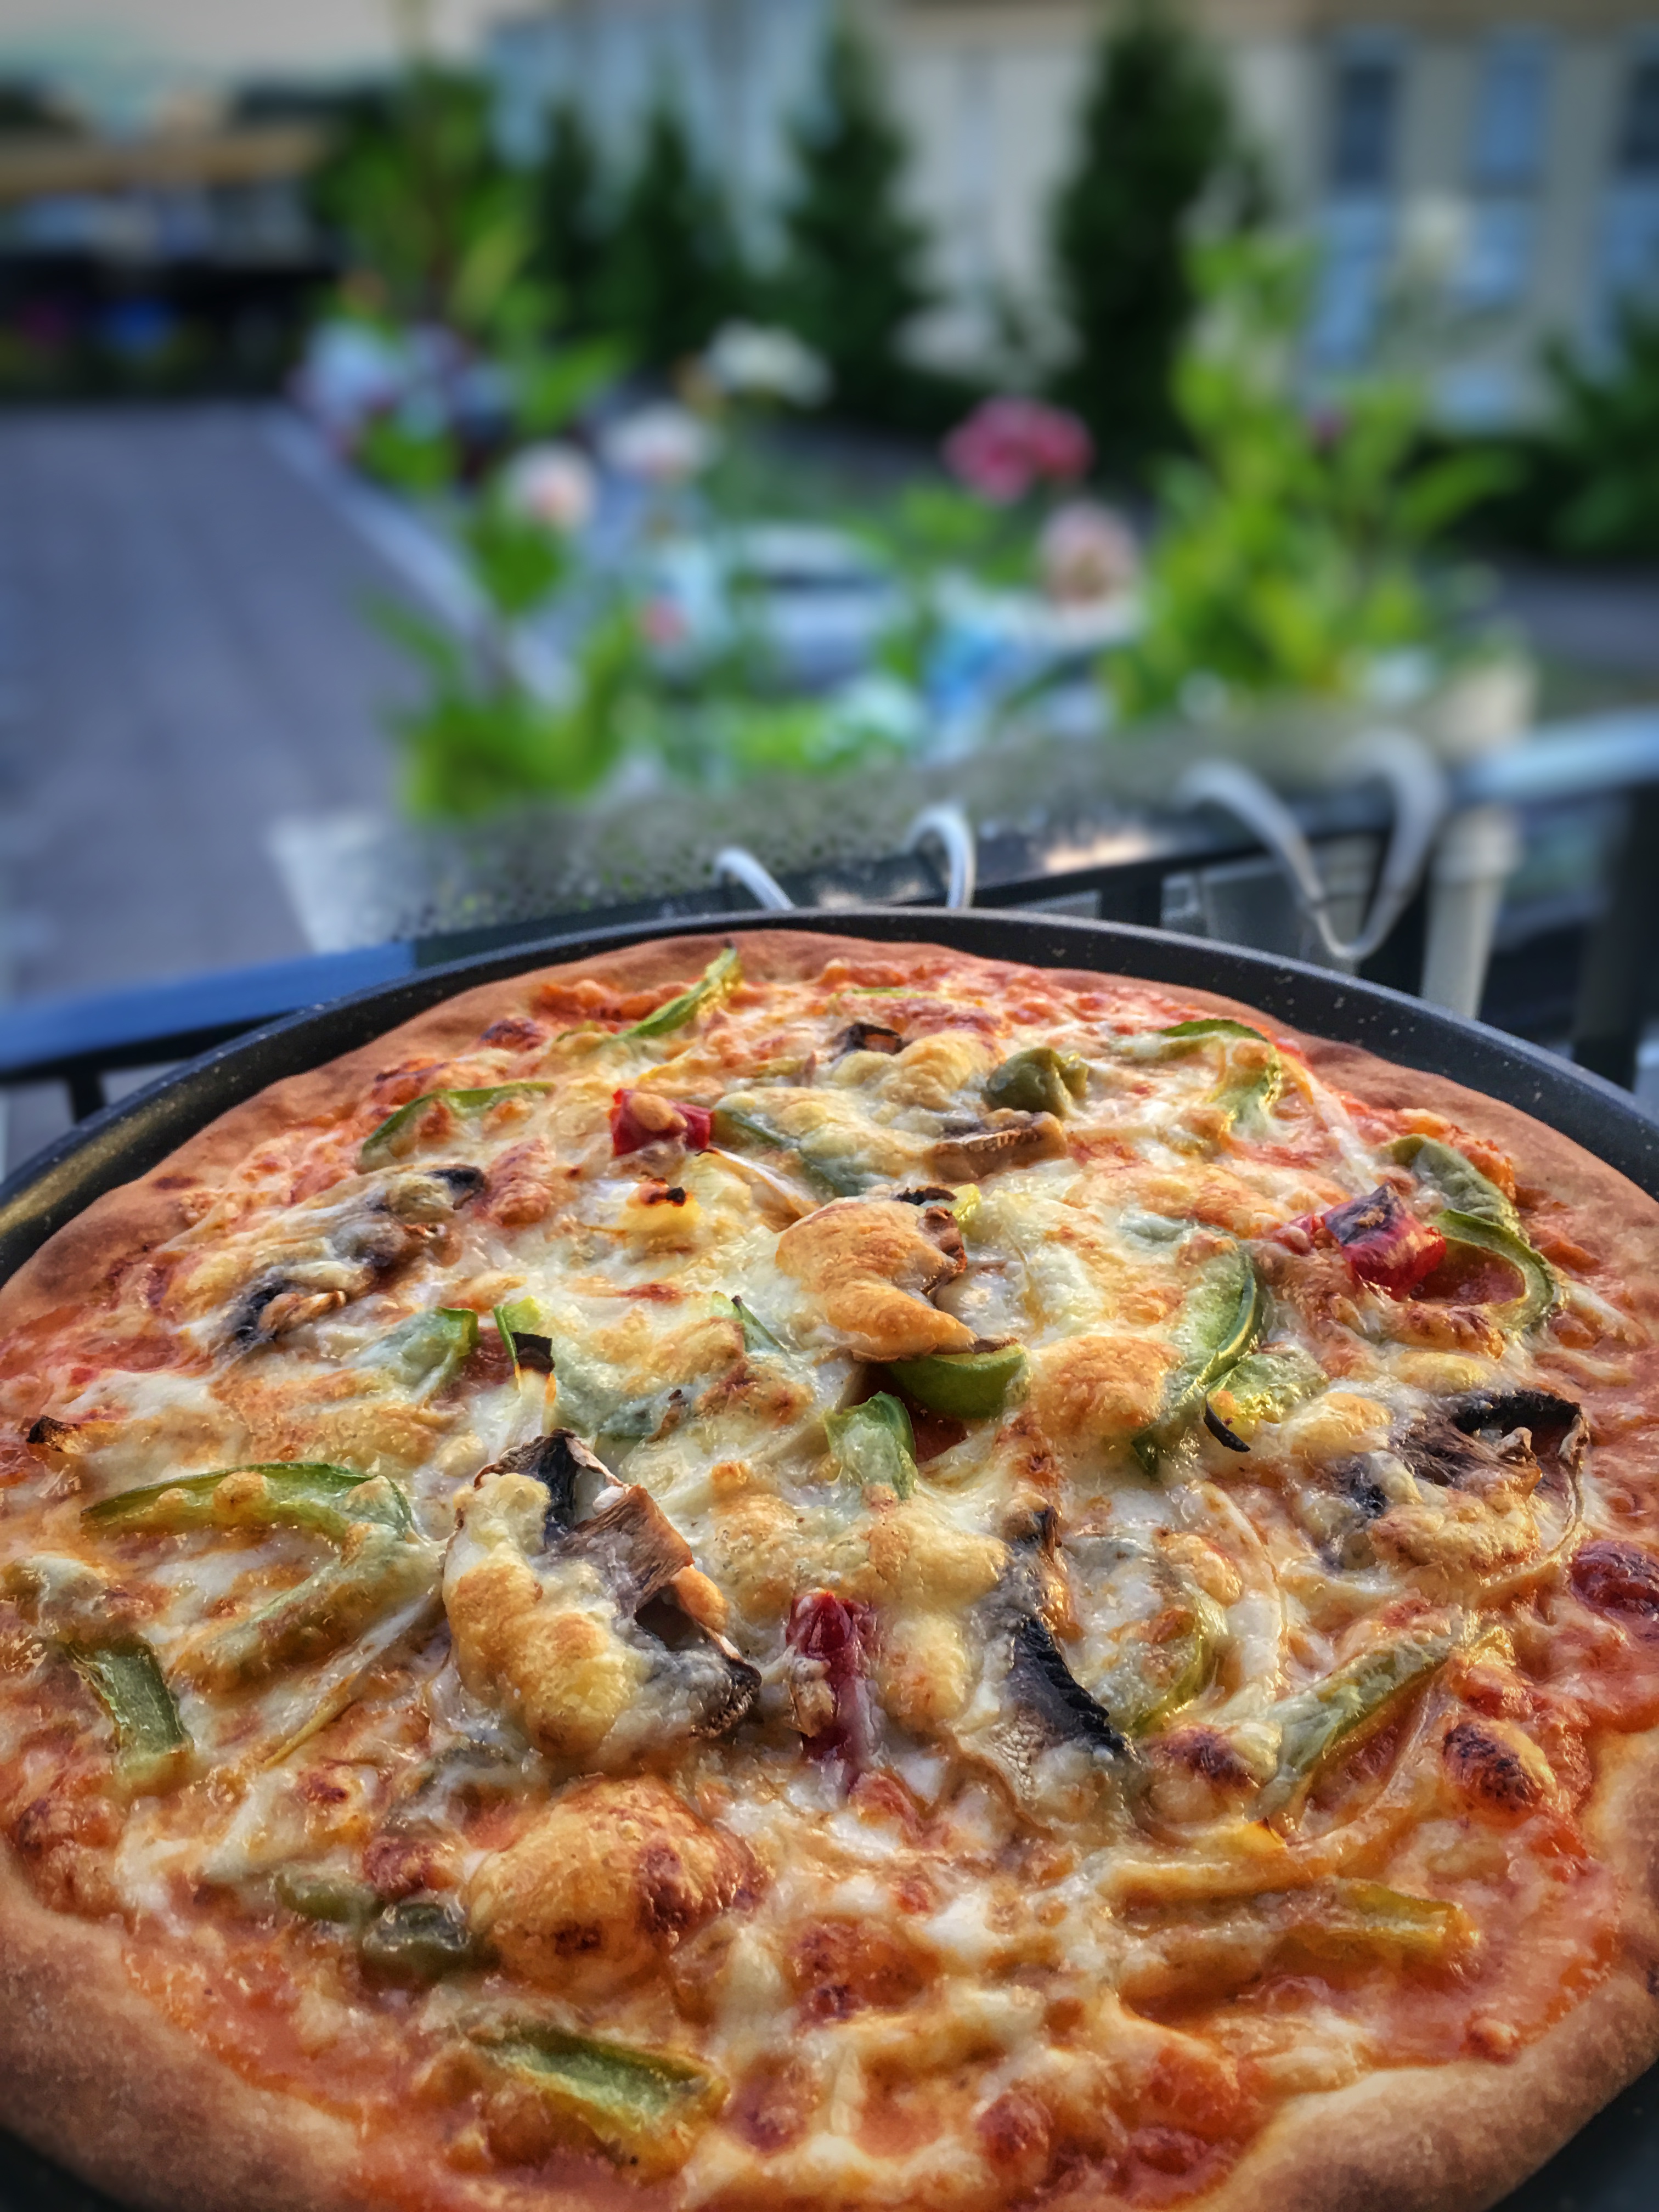 Homemade Veg Pizza